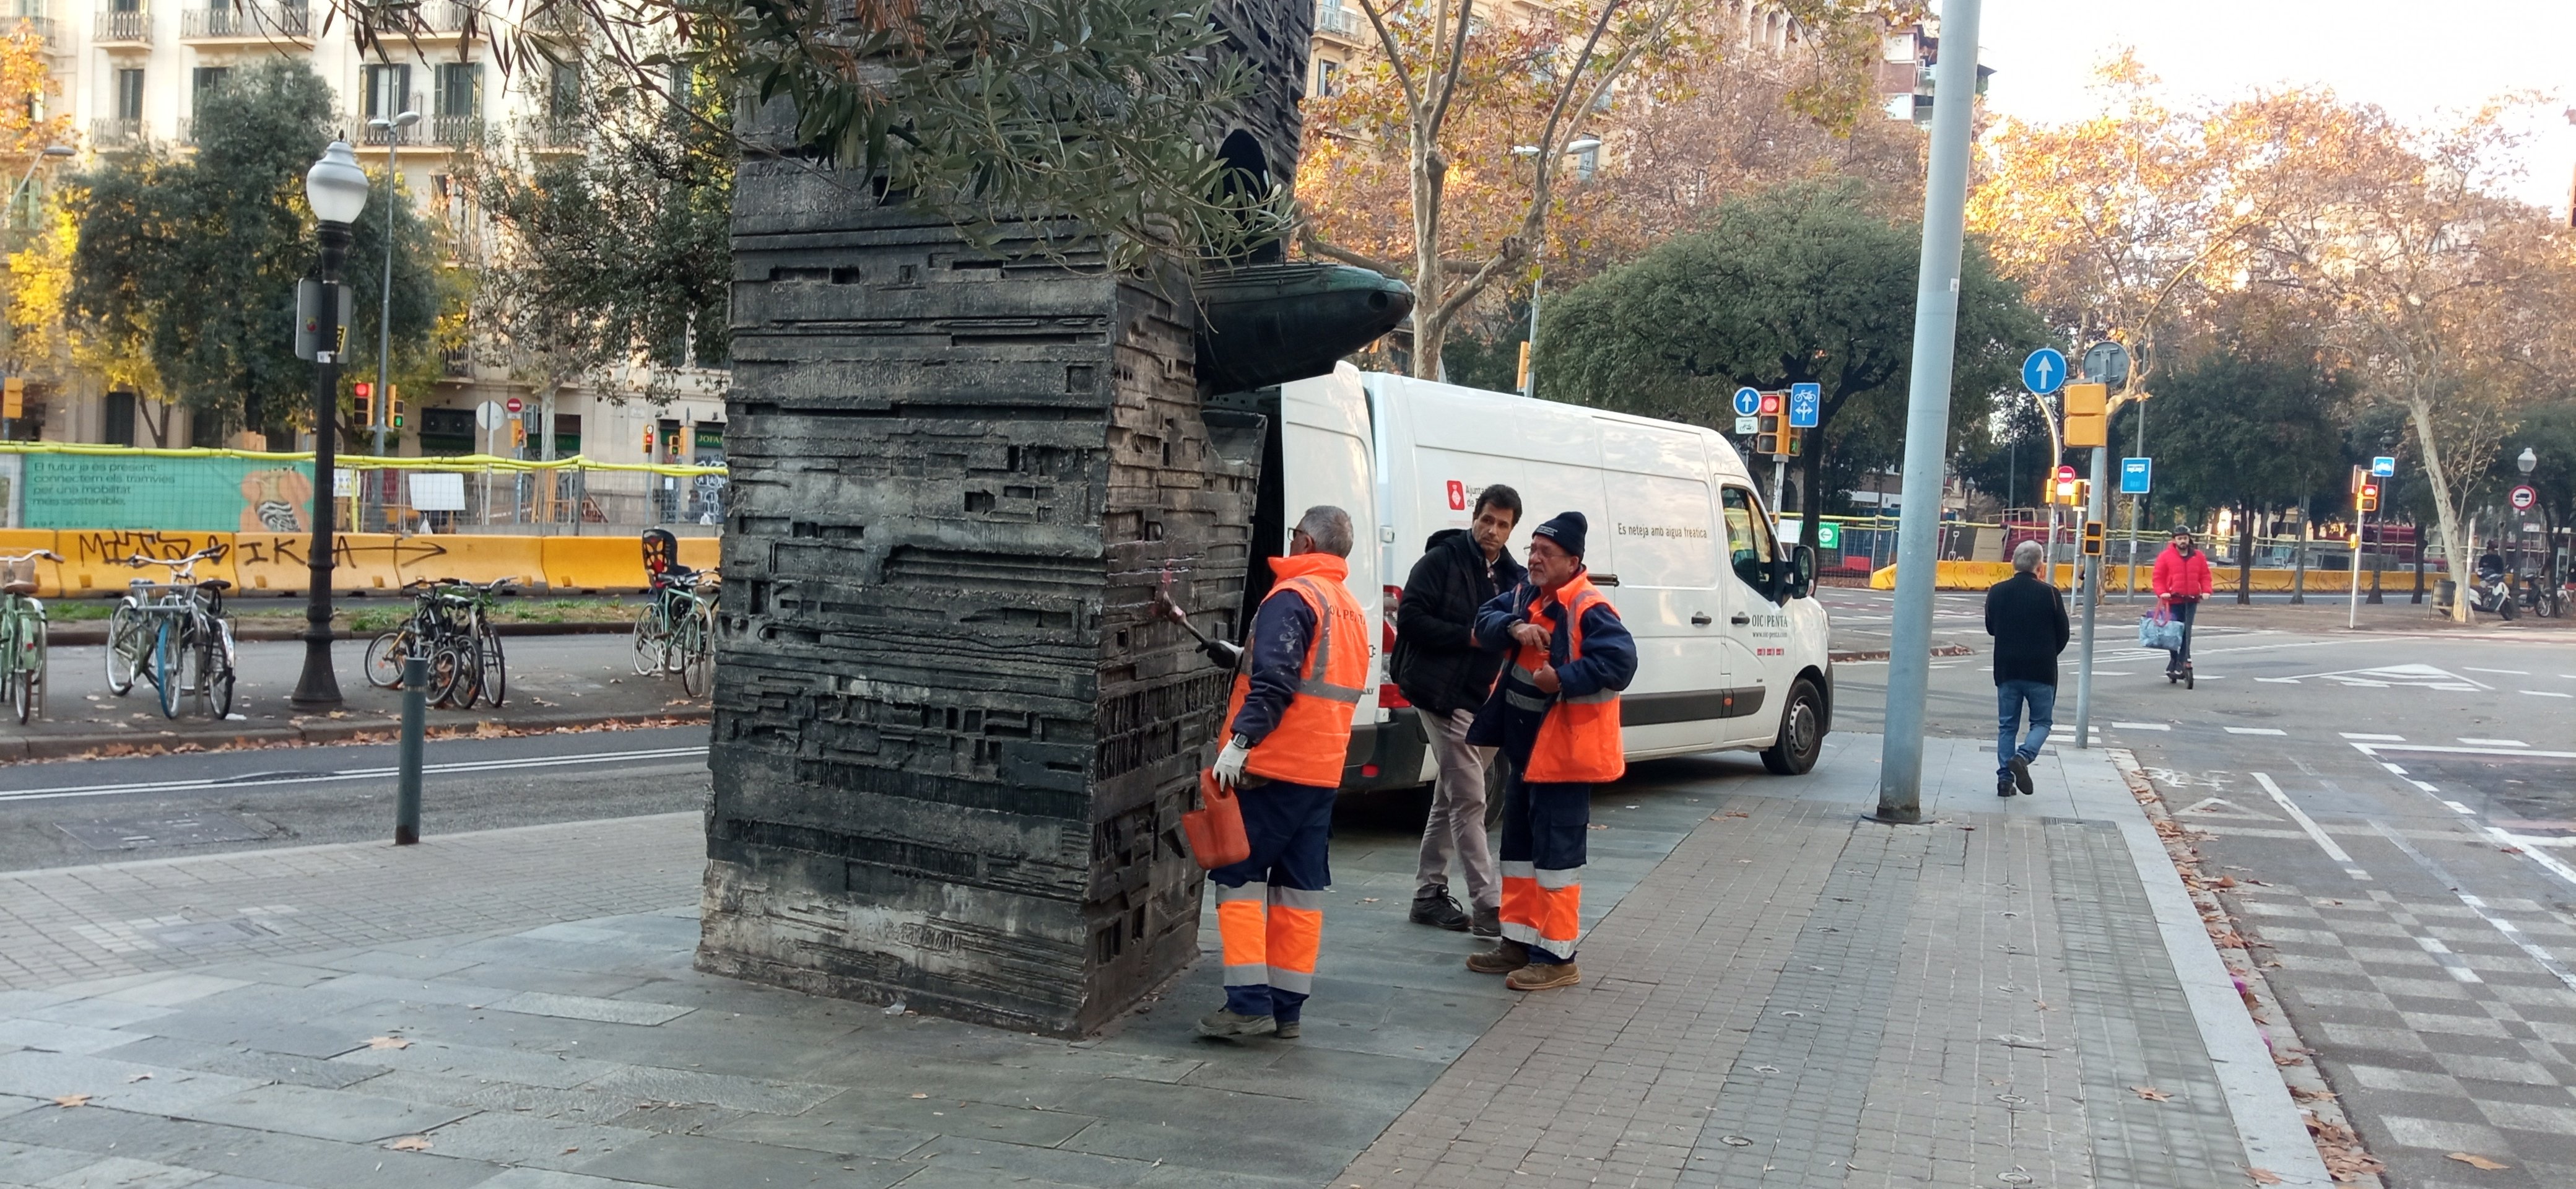 El Ayuntamiento de Barcelona empieza a 'desvandalizar' el monumento de Subirachs a Monturiol